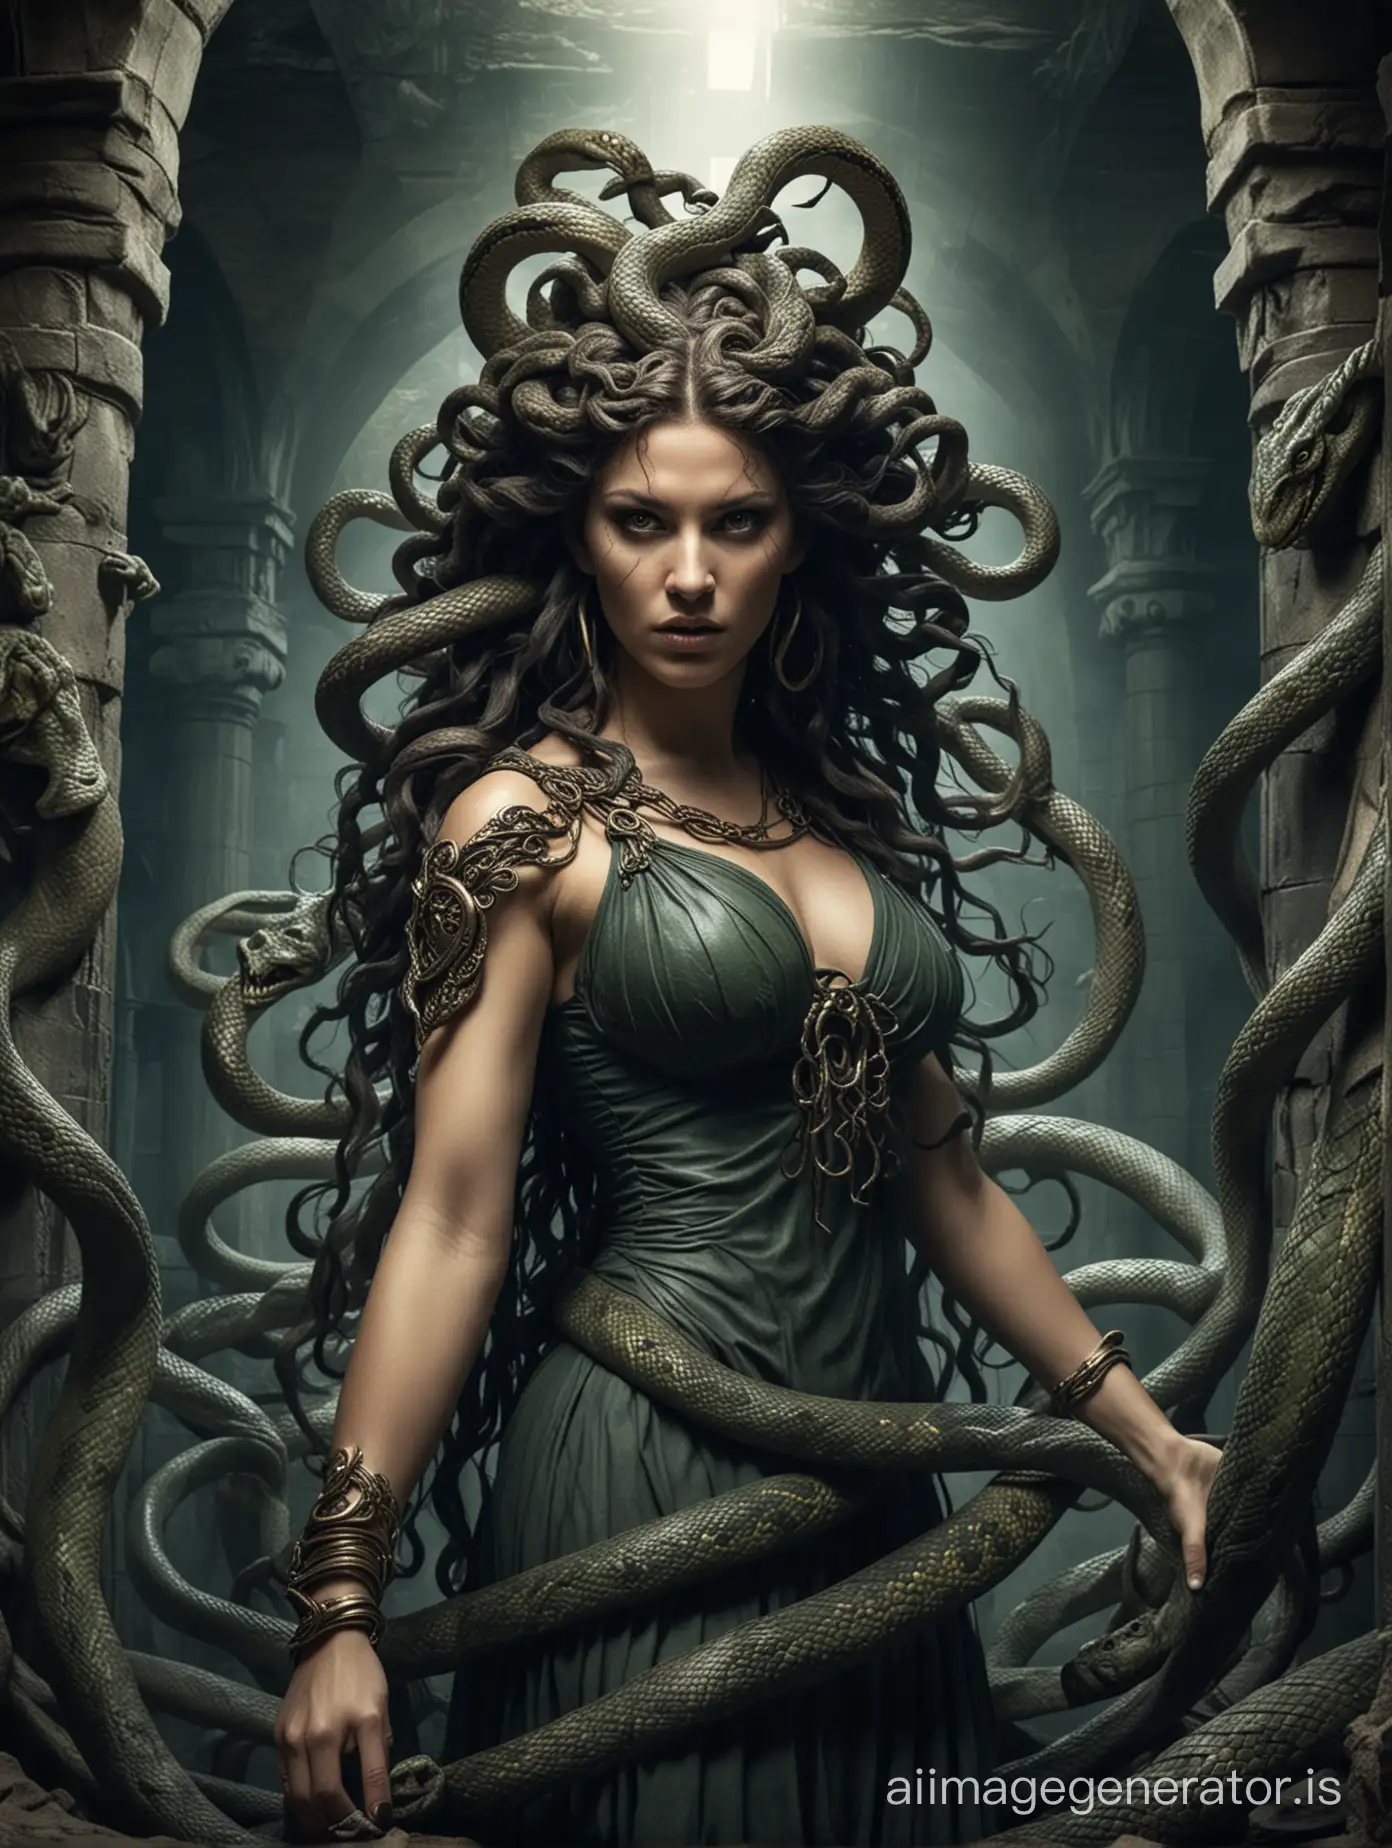 mythological medusa. woman-snake. background underground dungeon